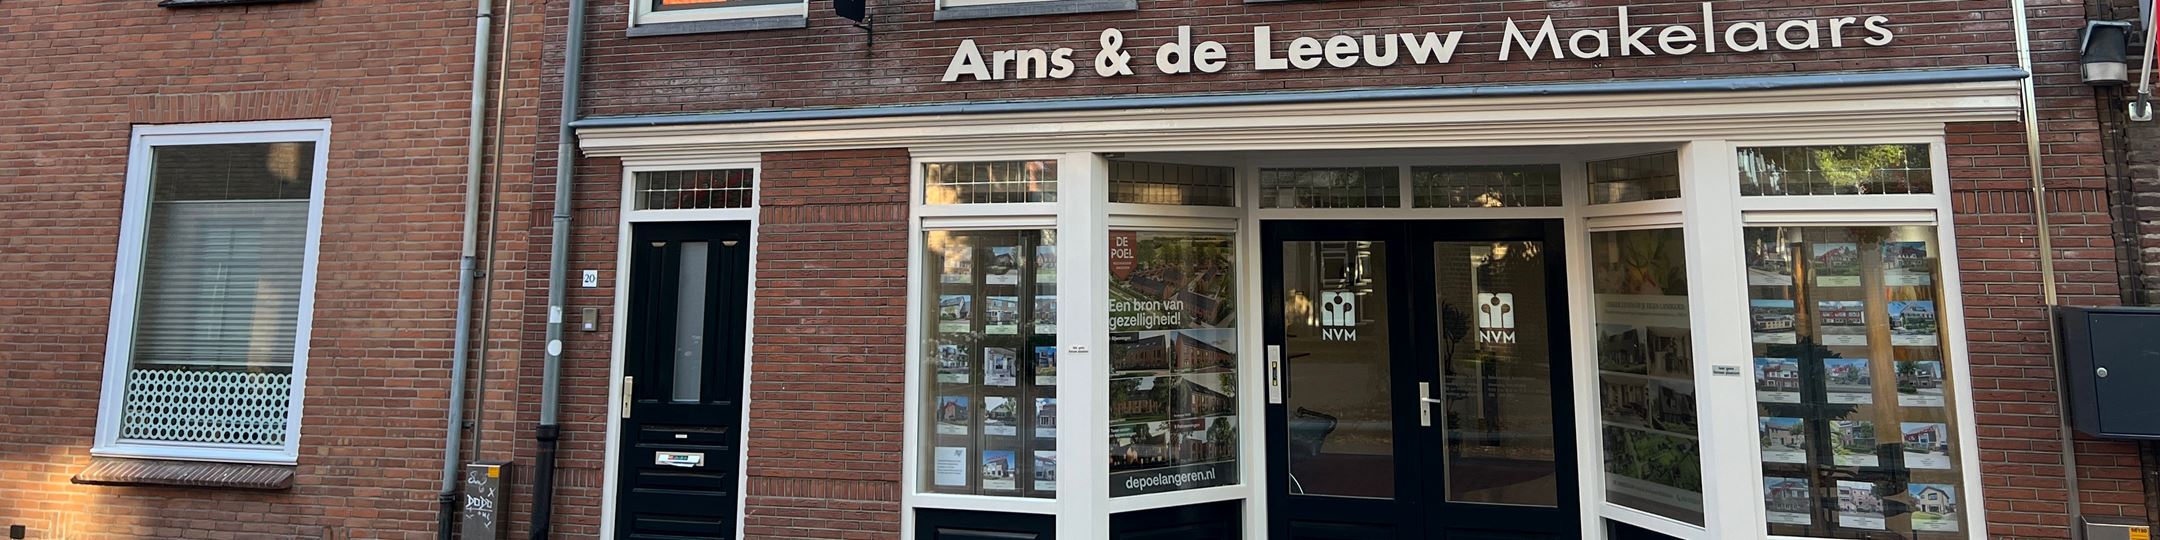 Banner Arns & De Leeuw Makelaars